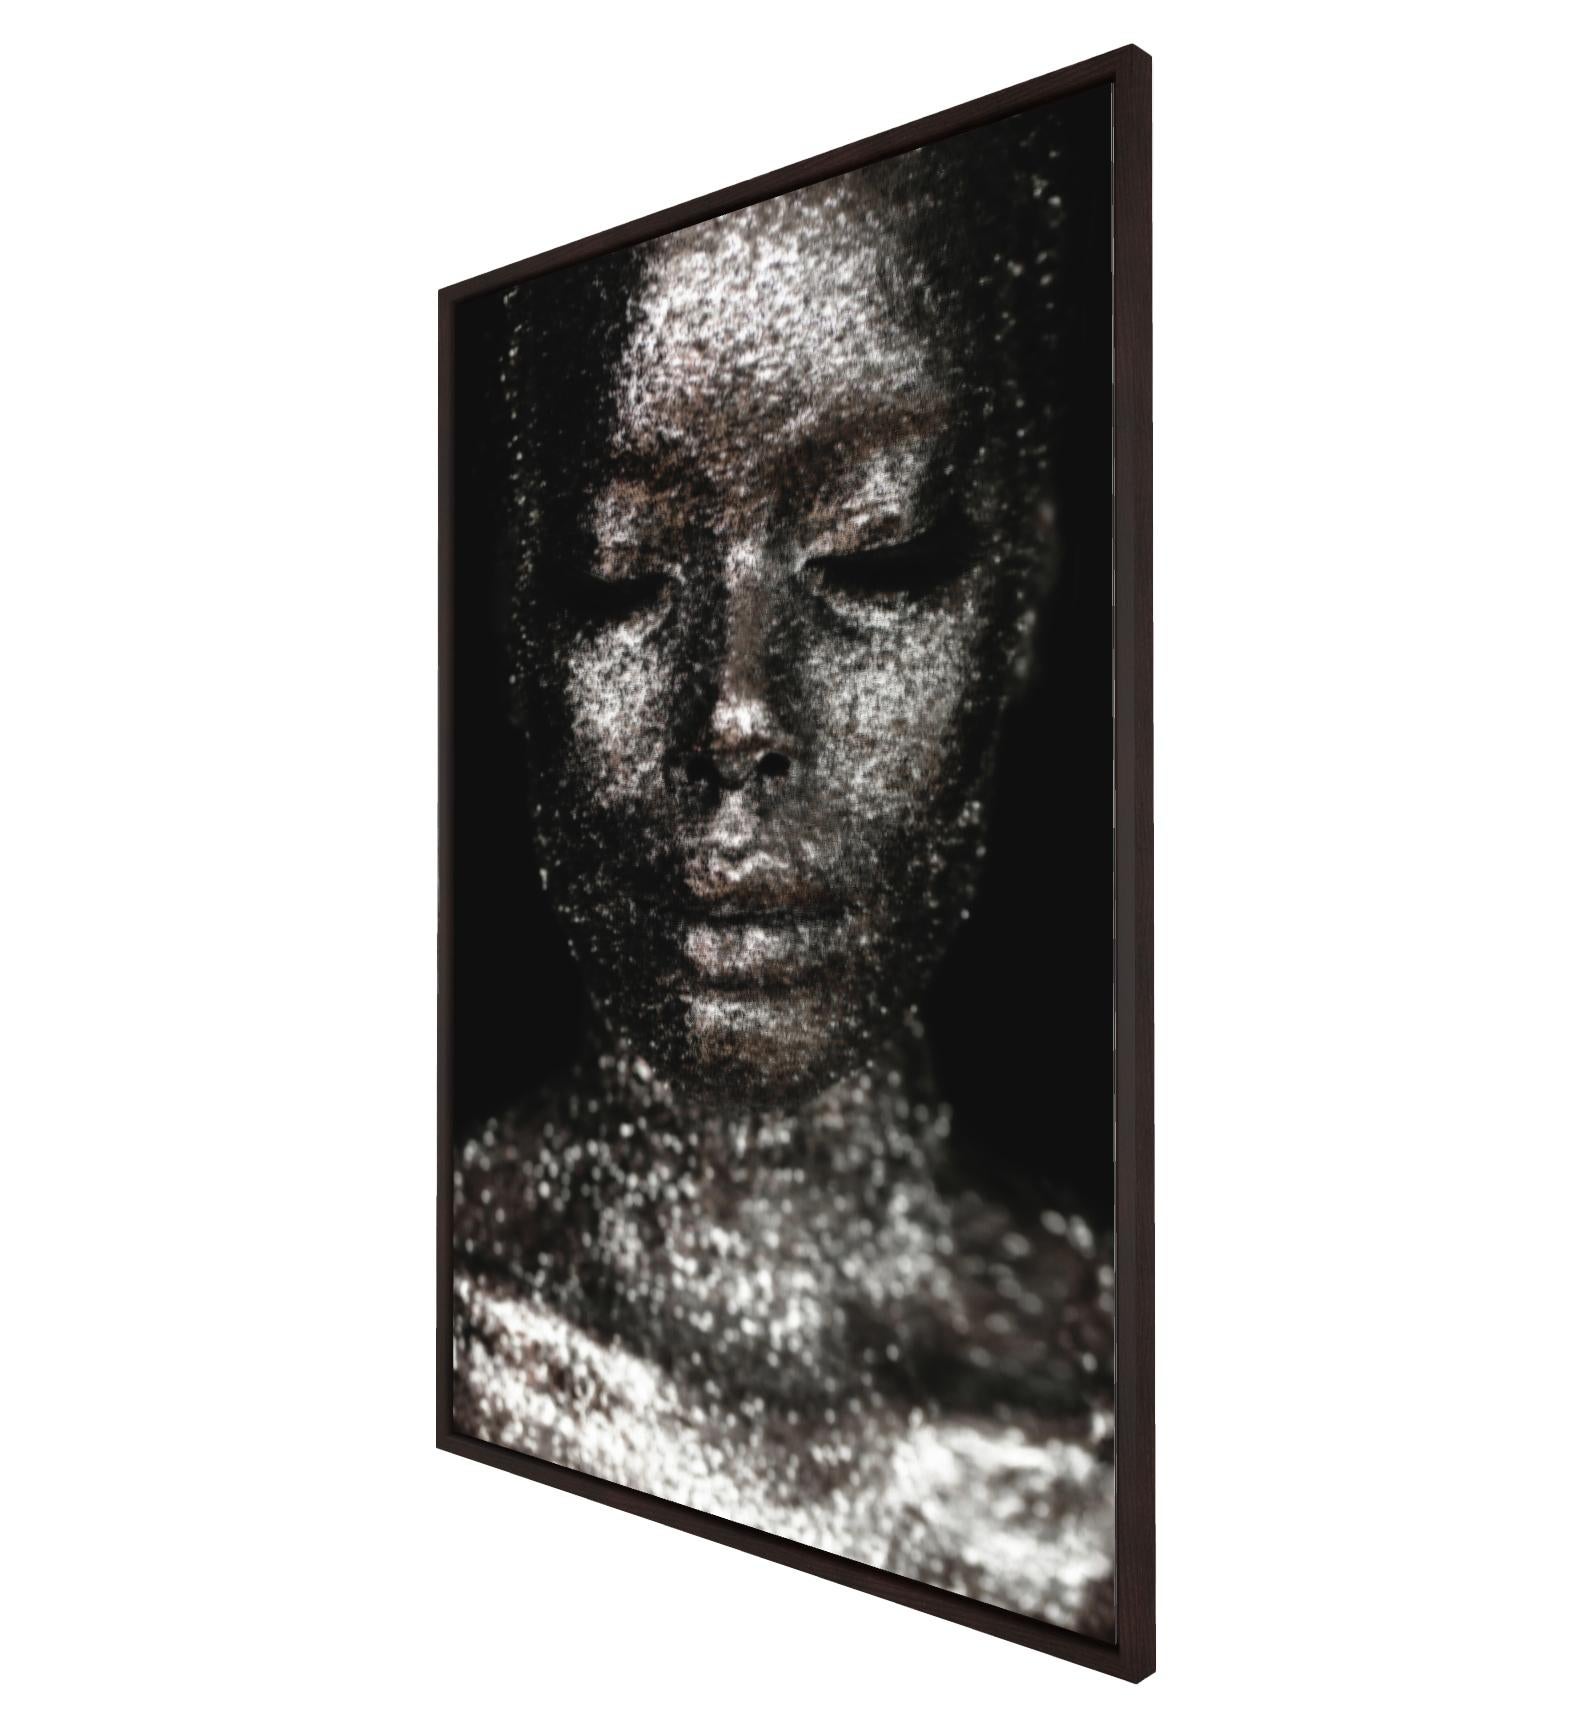 Shine On Me Crazy Diamond – Abstrakte expressionistische Kunstfotografie (Abstrakter Expressionismus), Photograph, von Roger Reist